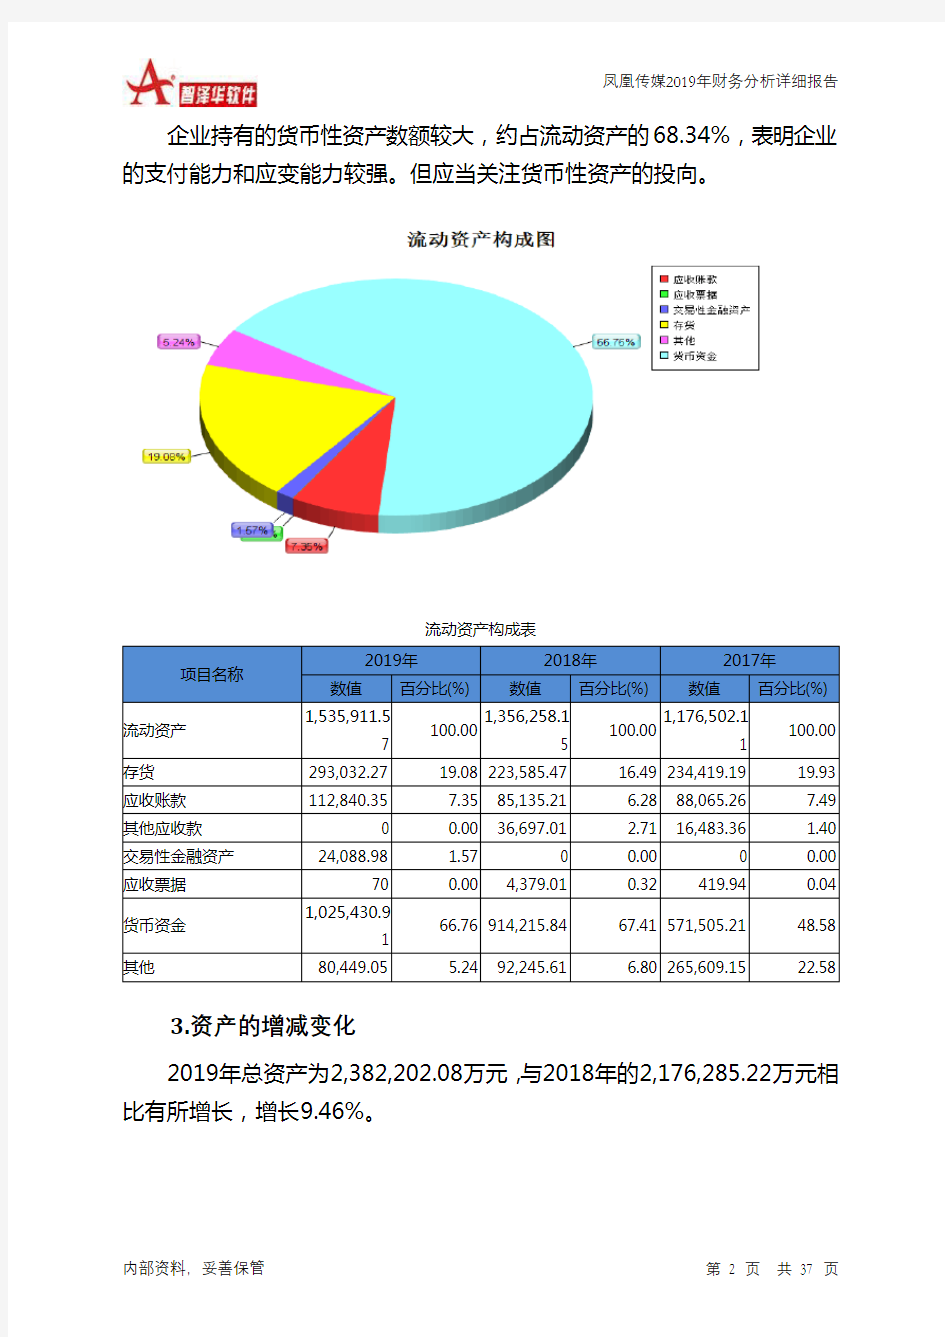 凤凰传媒2019年财务分析详细报告